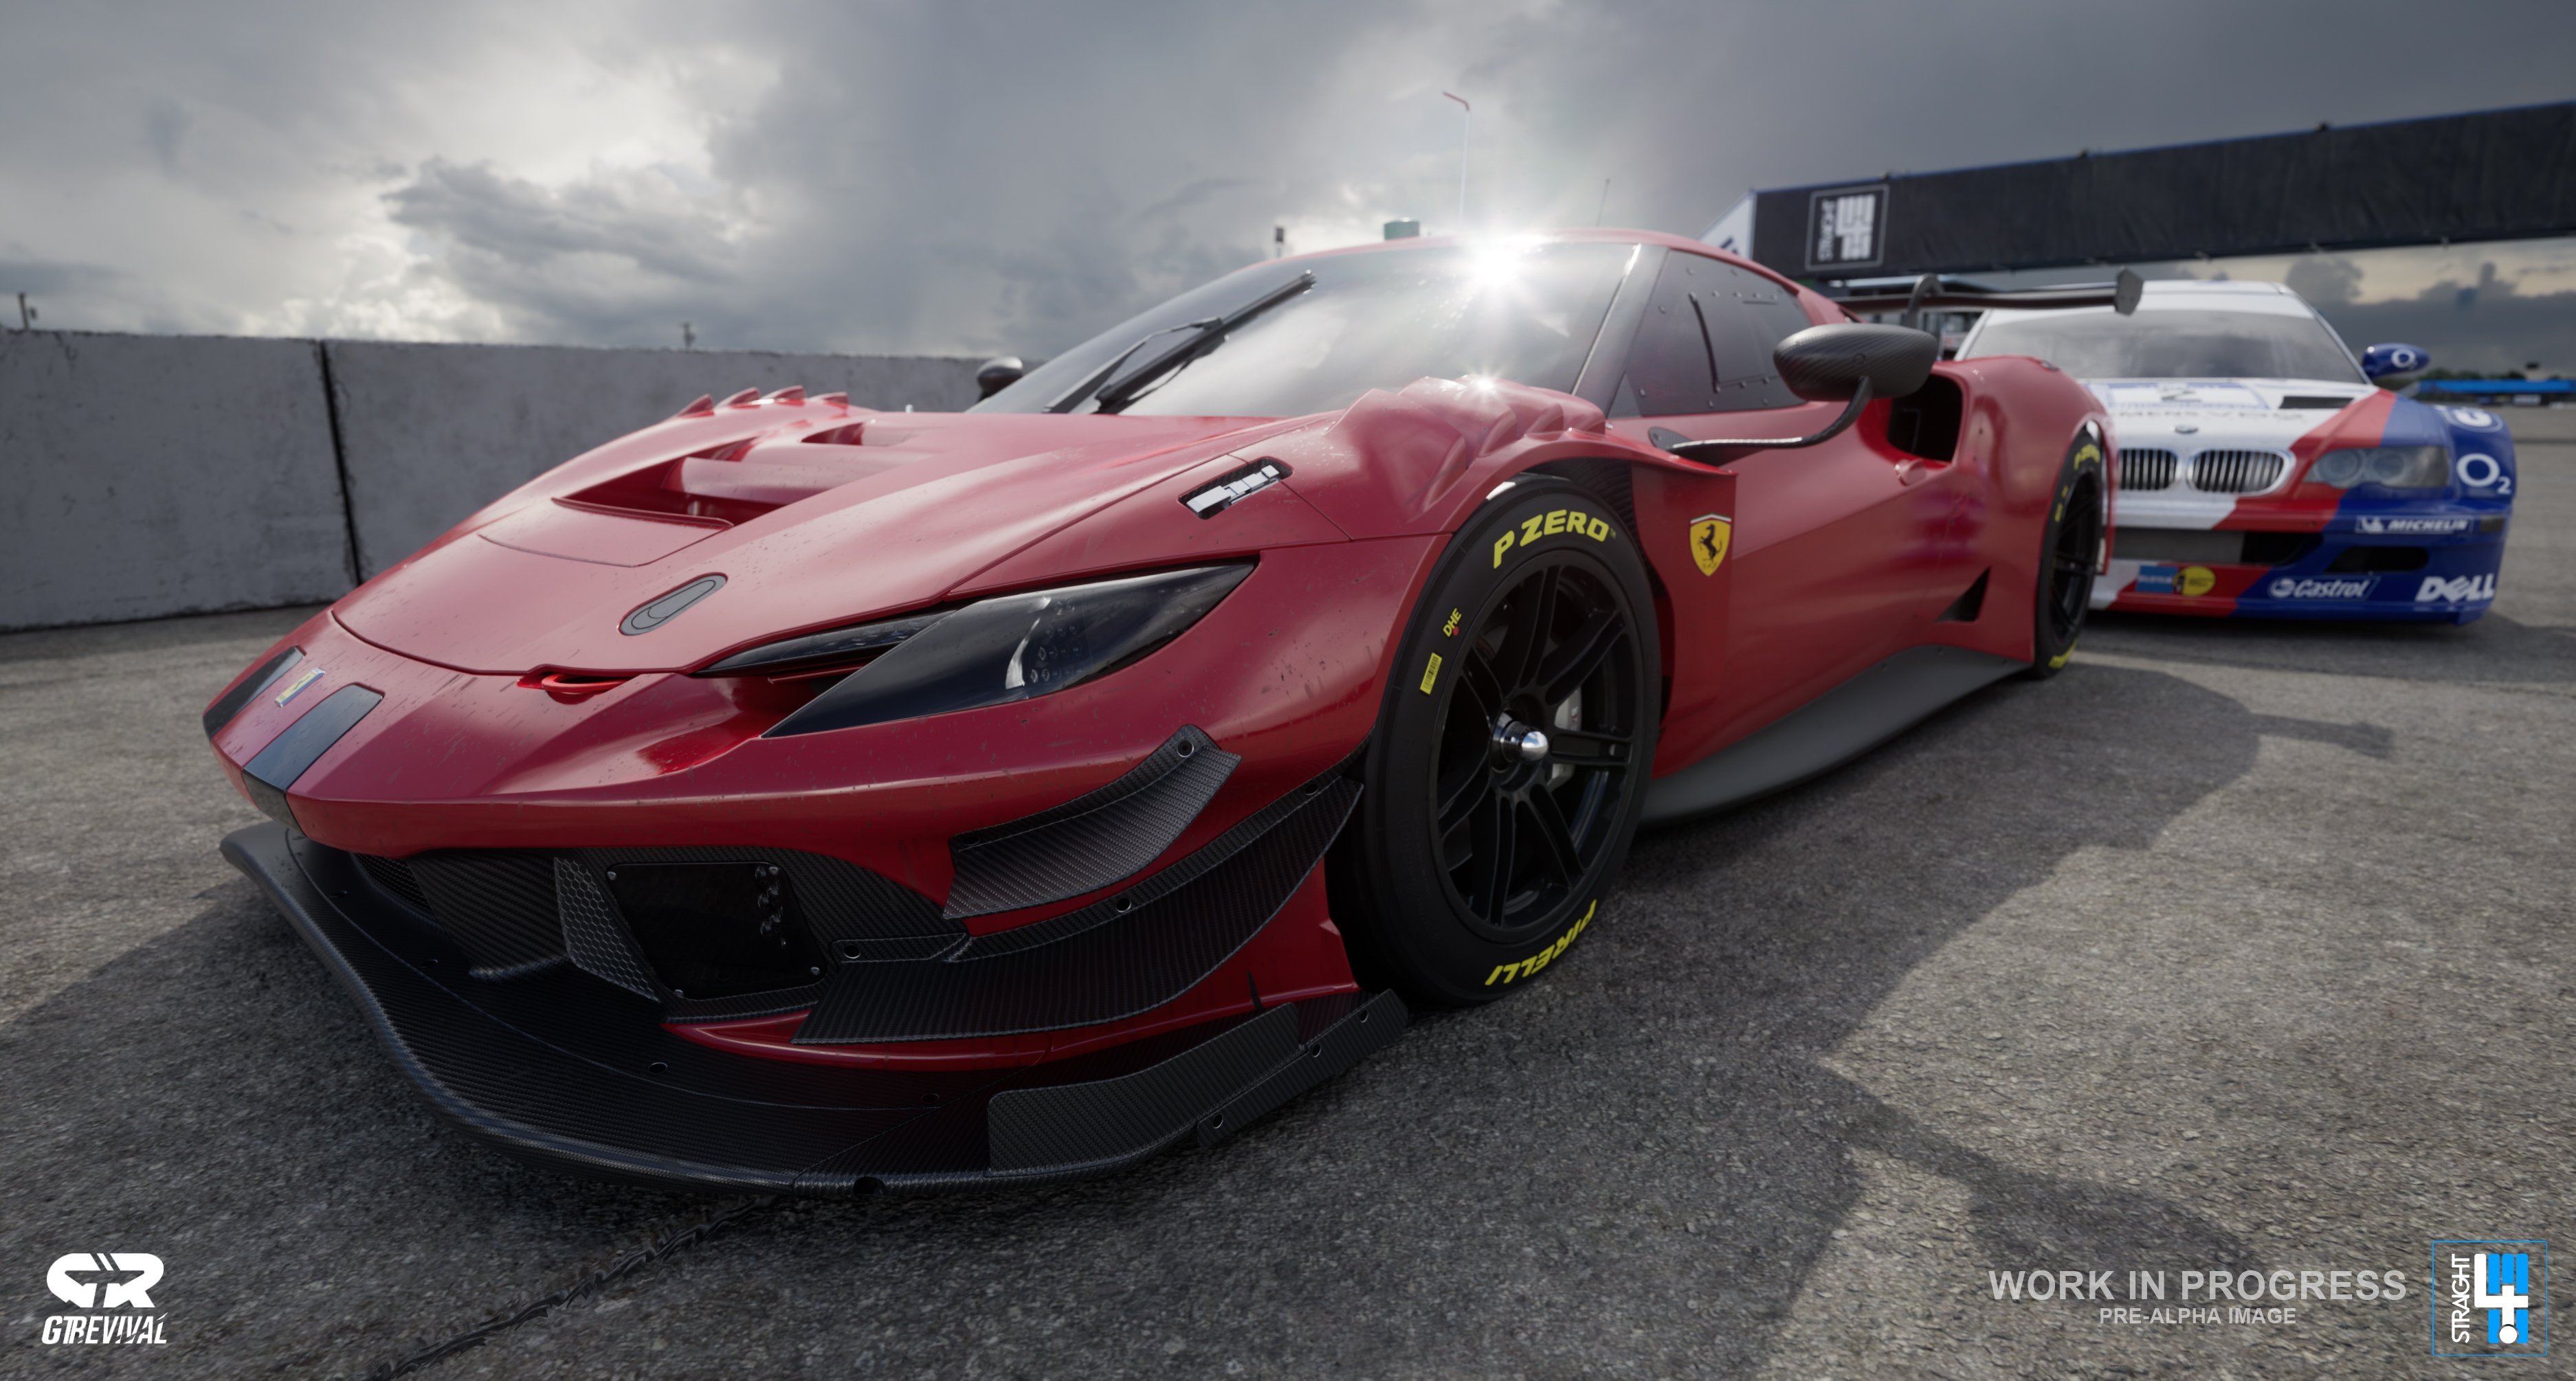 More information about "Primo trailer in game di GTRevival: la Ferrari 296 a Interlagos"